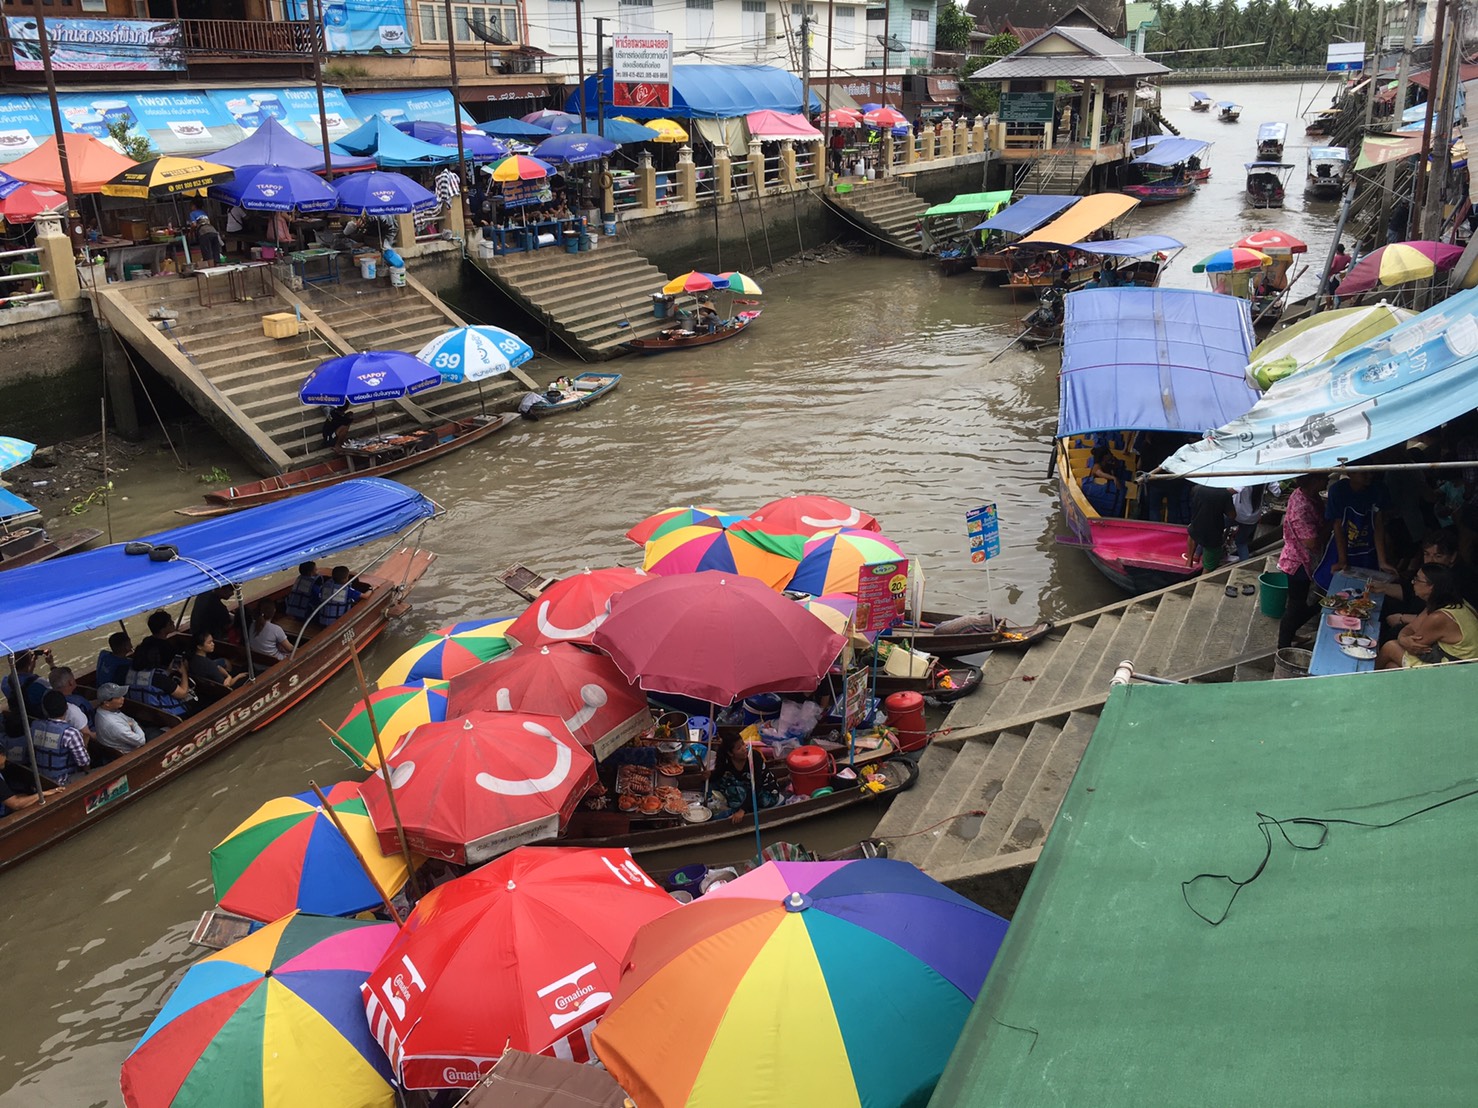 アンパワー水上マーケット,Amphawa Floating Market,ตลาดน้ำอัมพวา,タイ,バンコク,旅行,観光,スポット,水上マーケット,市場,ローカル市場,行き方,説明